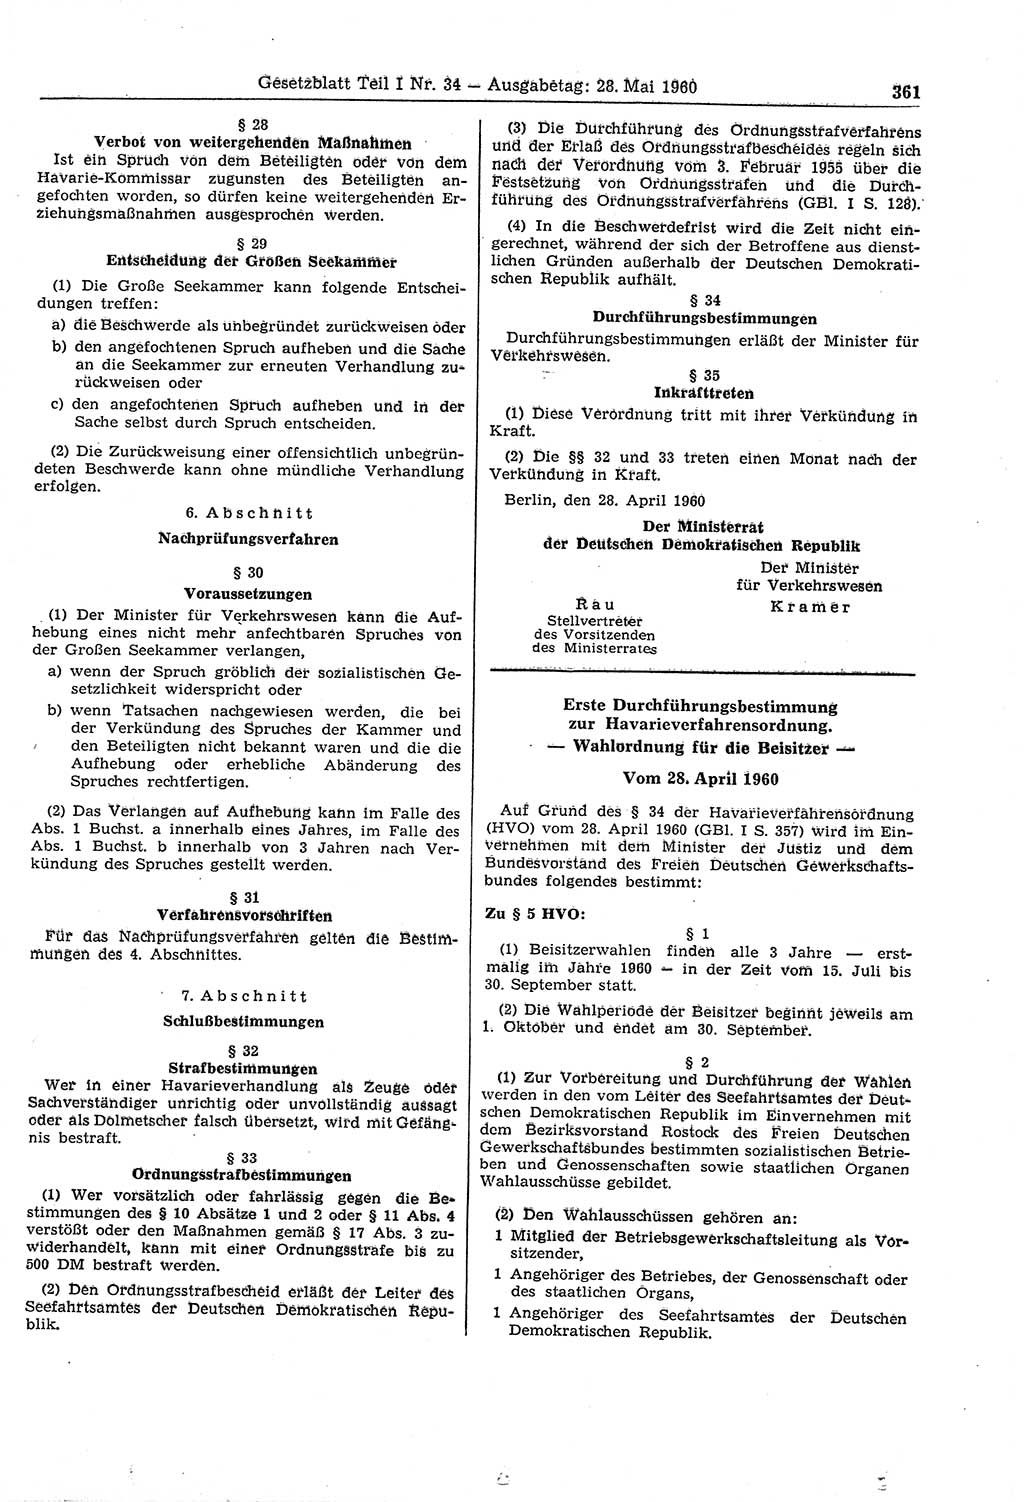 Gesetzblatt (GBl.) der Deutschen Demokratischen Republik (DDR) Teil Ⅰ 1960, Seite 361 (GBl. DDR Ⅰ 1960, S. 361)